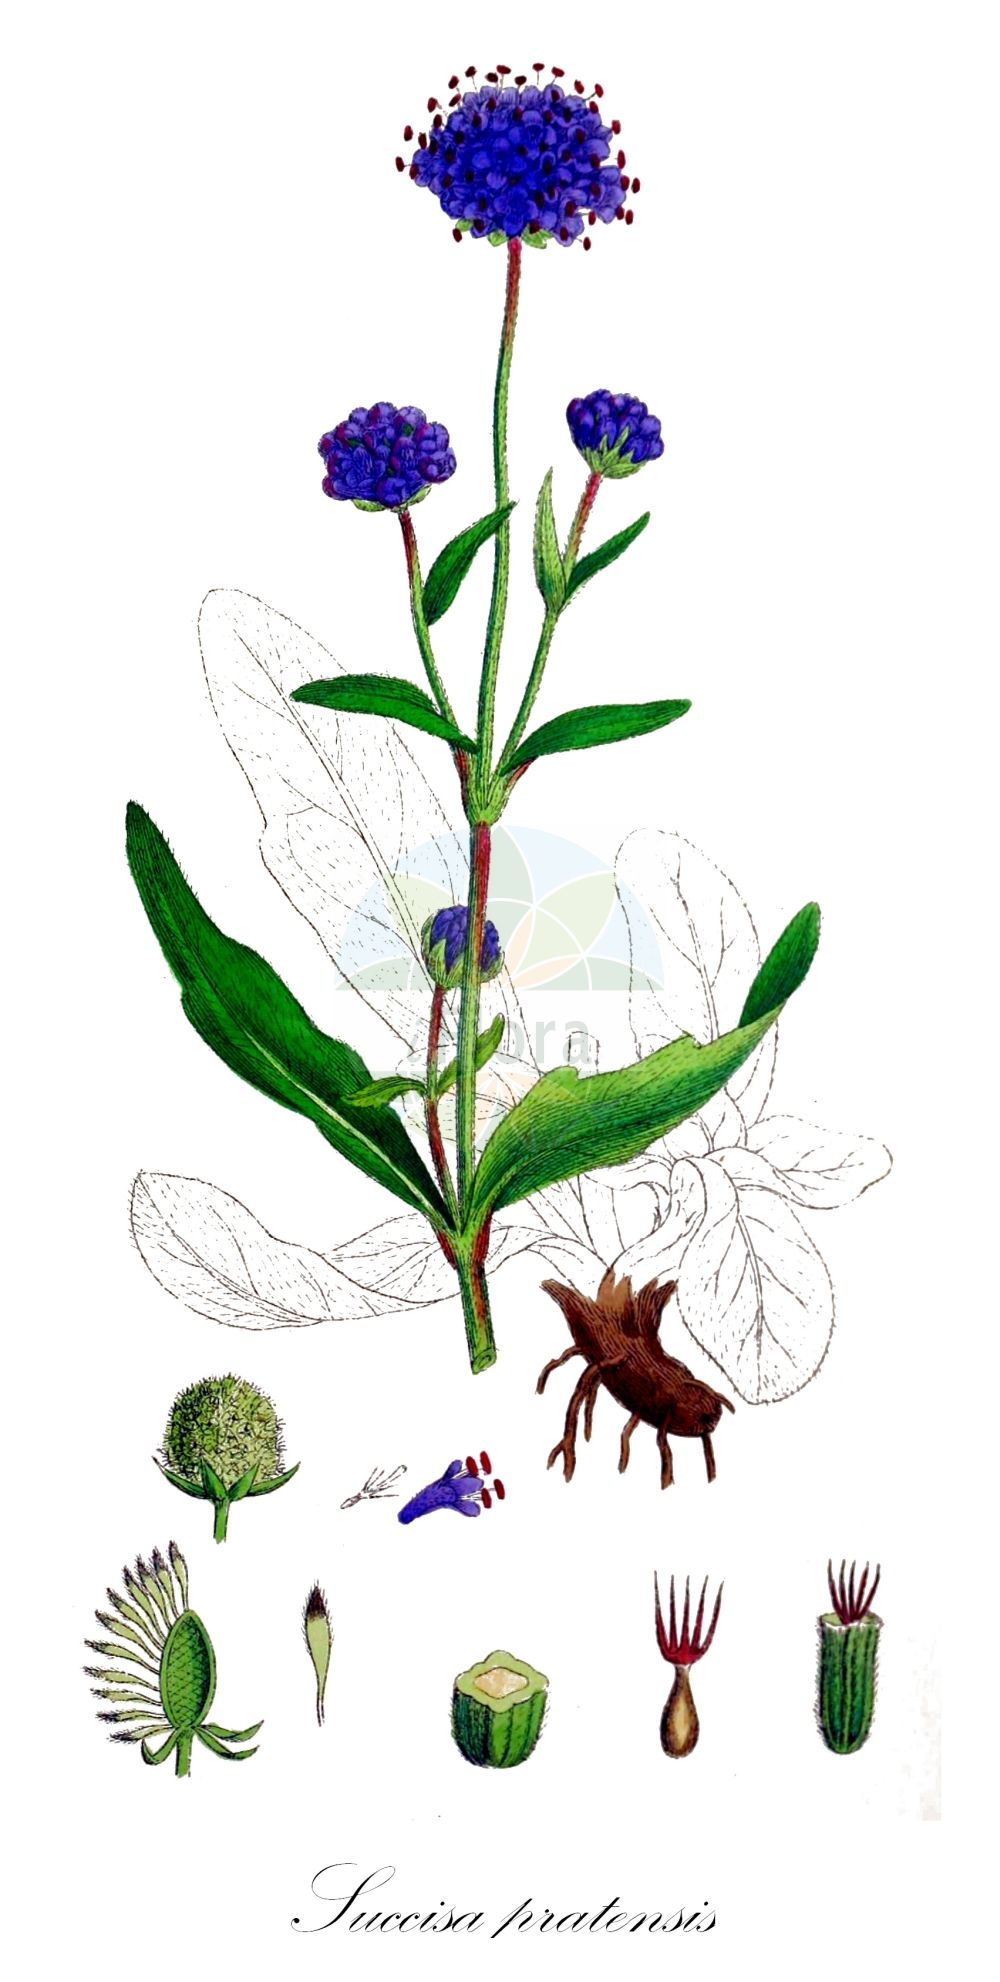 Historische Abbildung von Succisa pratensis (Gewöhnlicher Teufelsabbiß - Devil's-bit Scabious). Das Bild zeigt Blatt, Bluete, Frucht und Same. ---- Historical Drawing of Succisa pratensis (Gewöhnlicher Teufelsabbiß - Devil's-bit Scabious). The image is showing leaf, flower, fruit and seed.(Succisa pratensis,Gewöhnlicher Teufelsabbiß,Devil's-bit Scabious,Scabiosa glabrata,Scabiosa succisa,Succisa praemorsa,Succisa pratensis,Gewoehnlicher Teufelsabbiss,Devil's-bit Scabious,Devilsbit,Succisa,Teufelsabbiß,Devil’S Bit Scabious,Caprifoliaceae,Geißblattgewächse,Honeysuckle family,Blatt,Bluete,Frucht,Same,leaf,flower,fruit,seed,Sowerby (1790-1813))